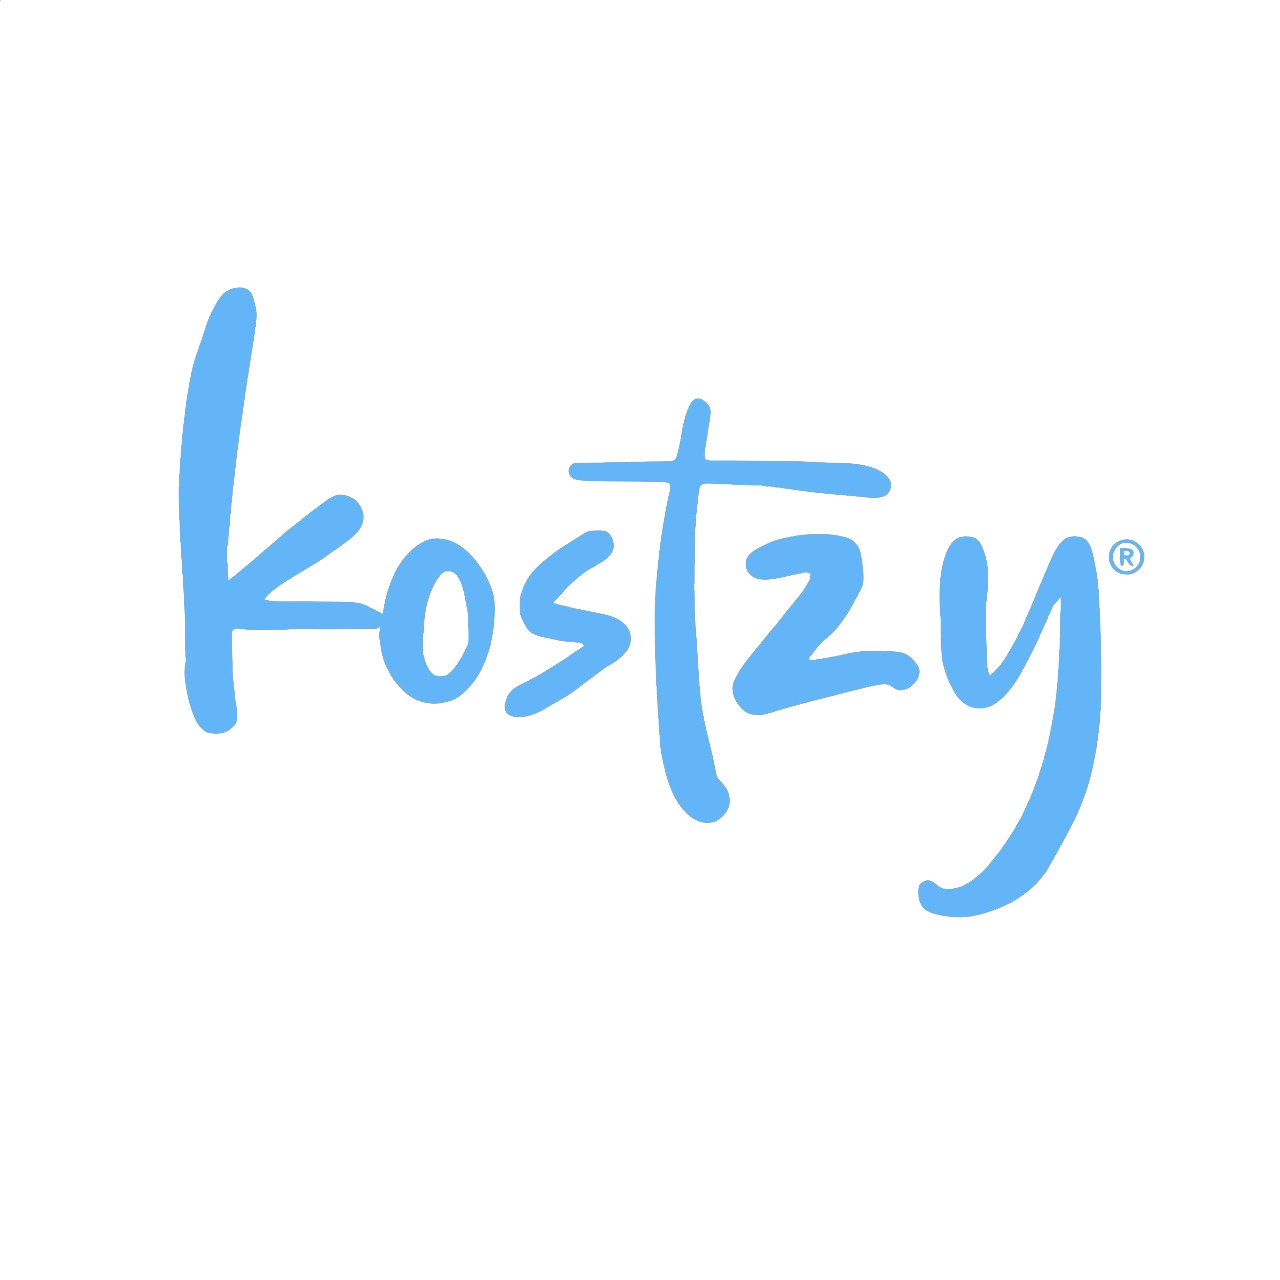 kostzy-logo